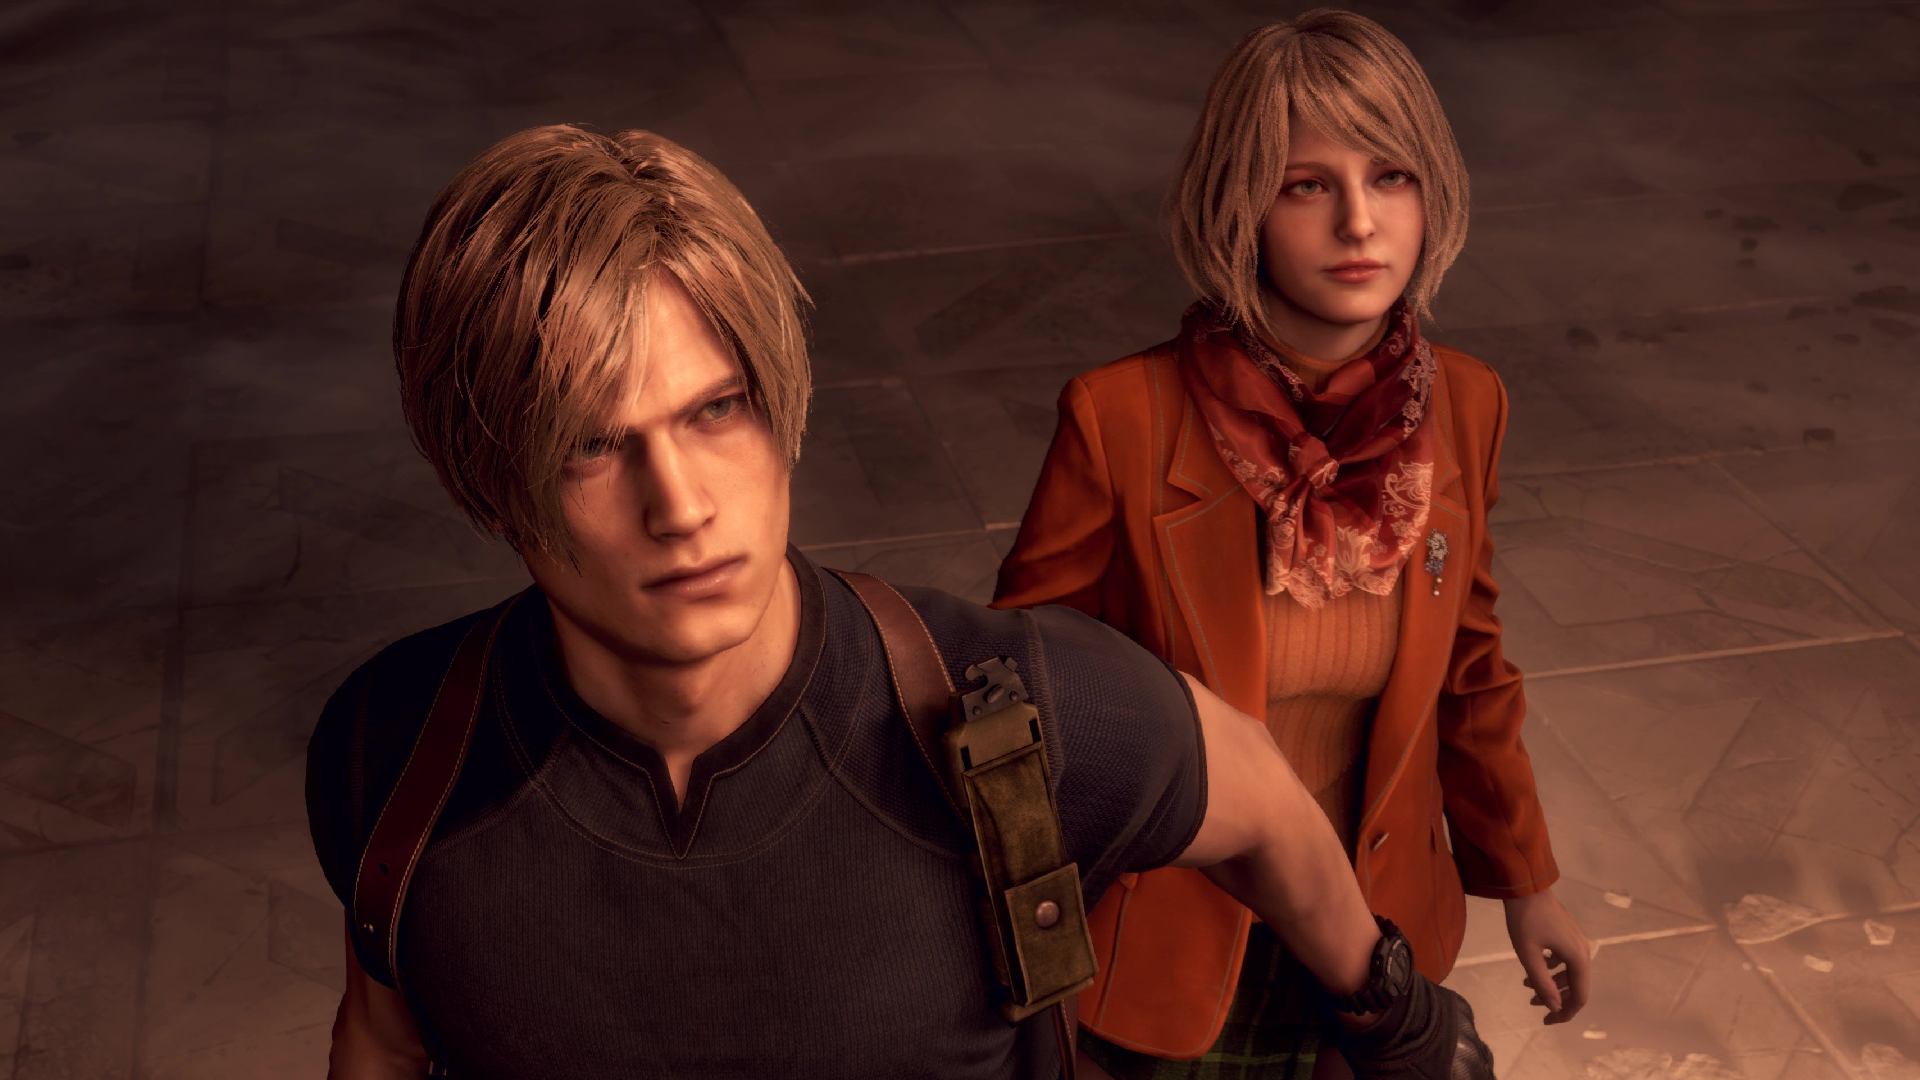 Relógios Resident Evil 4 Remake: Como resolver o enigma com Ashley